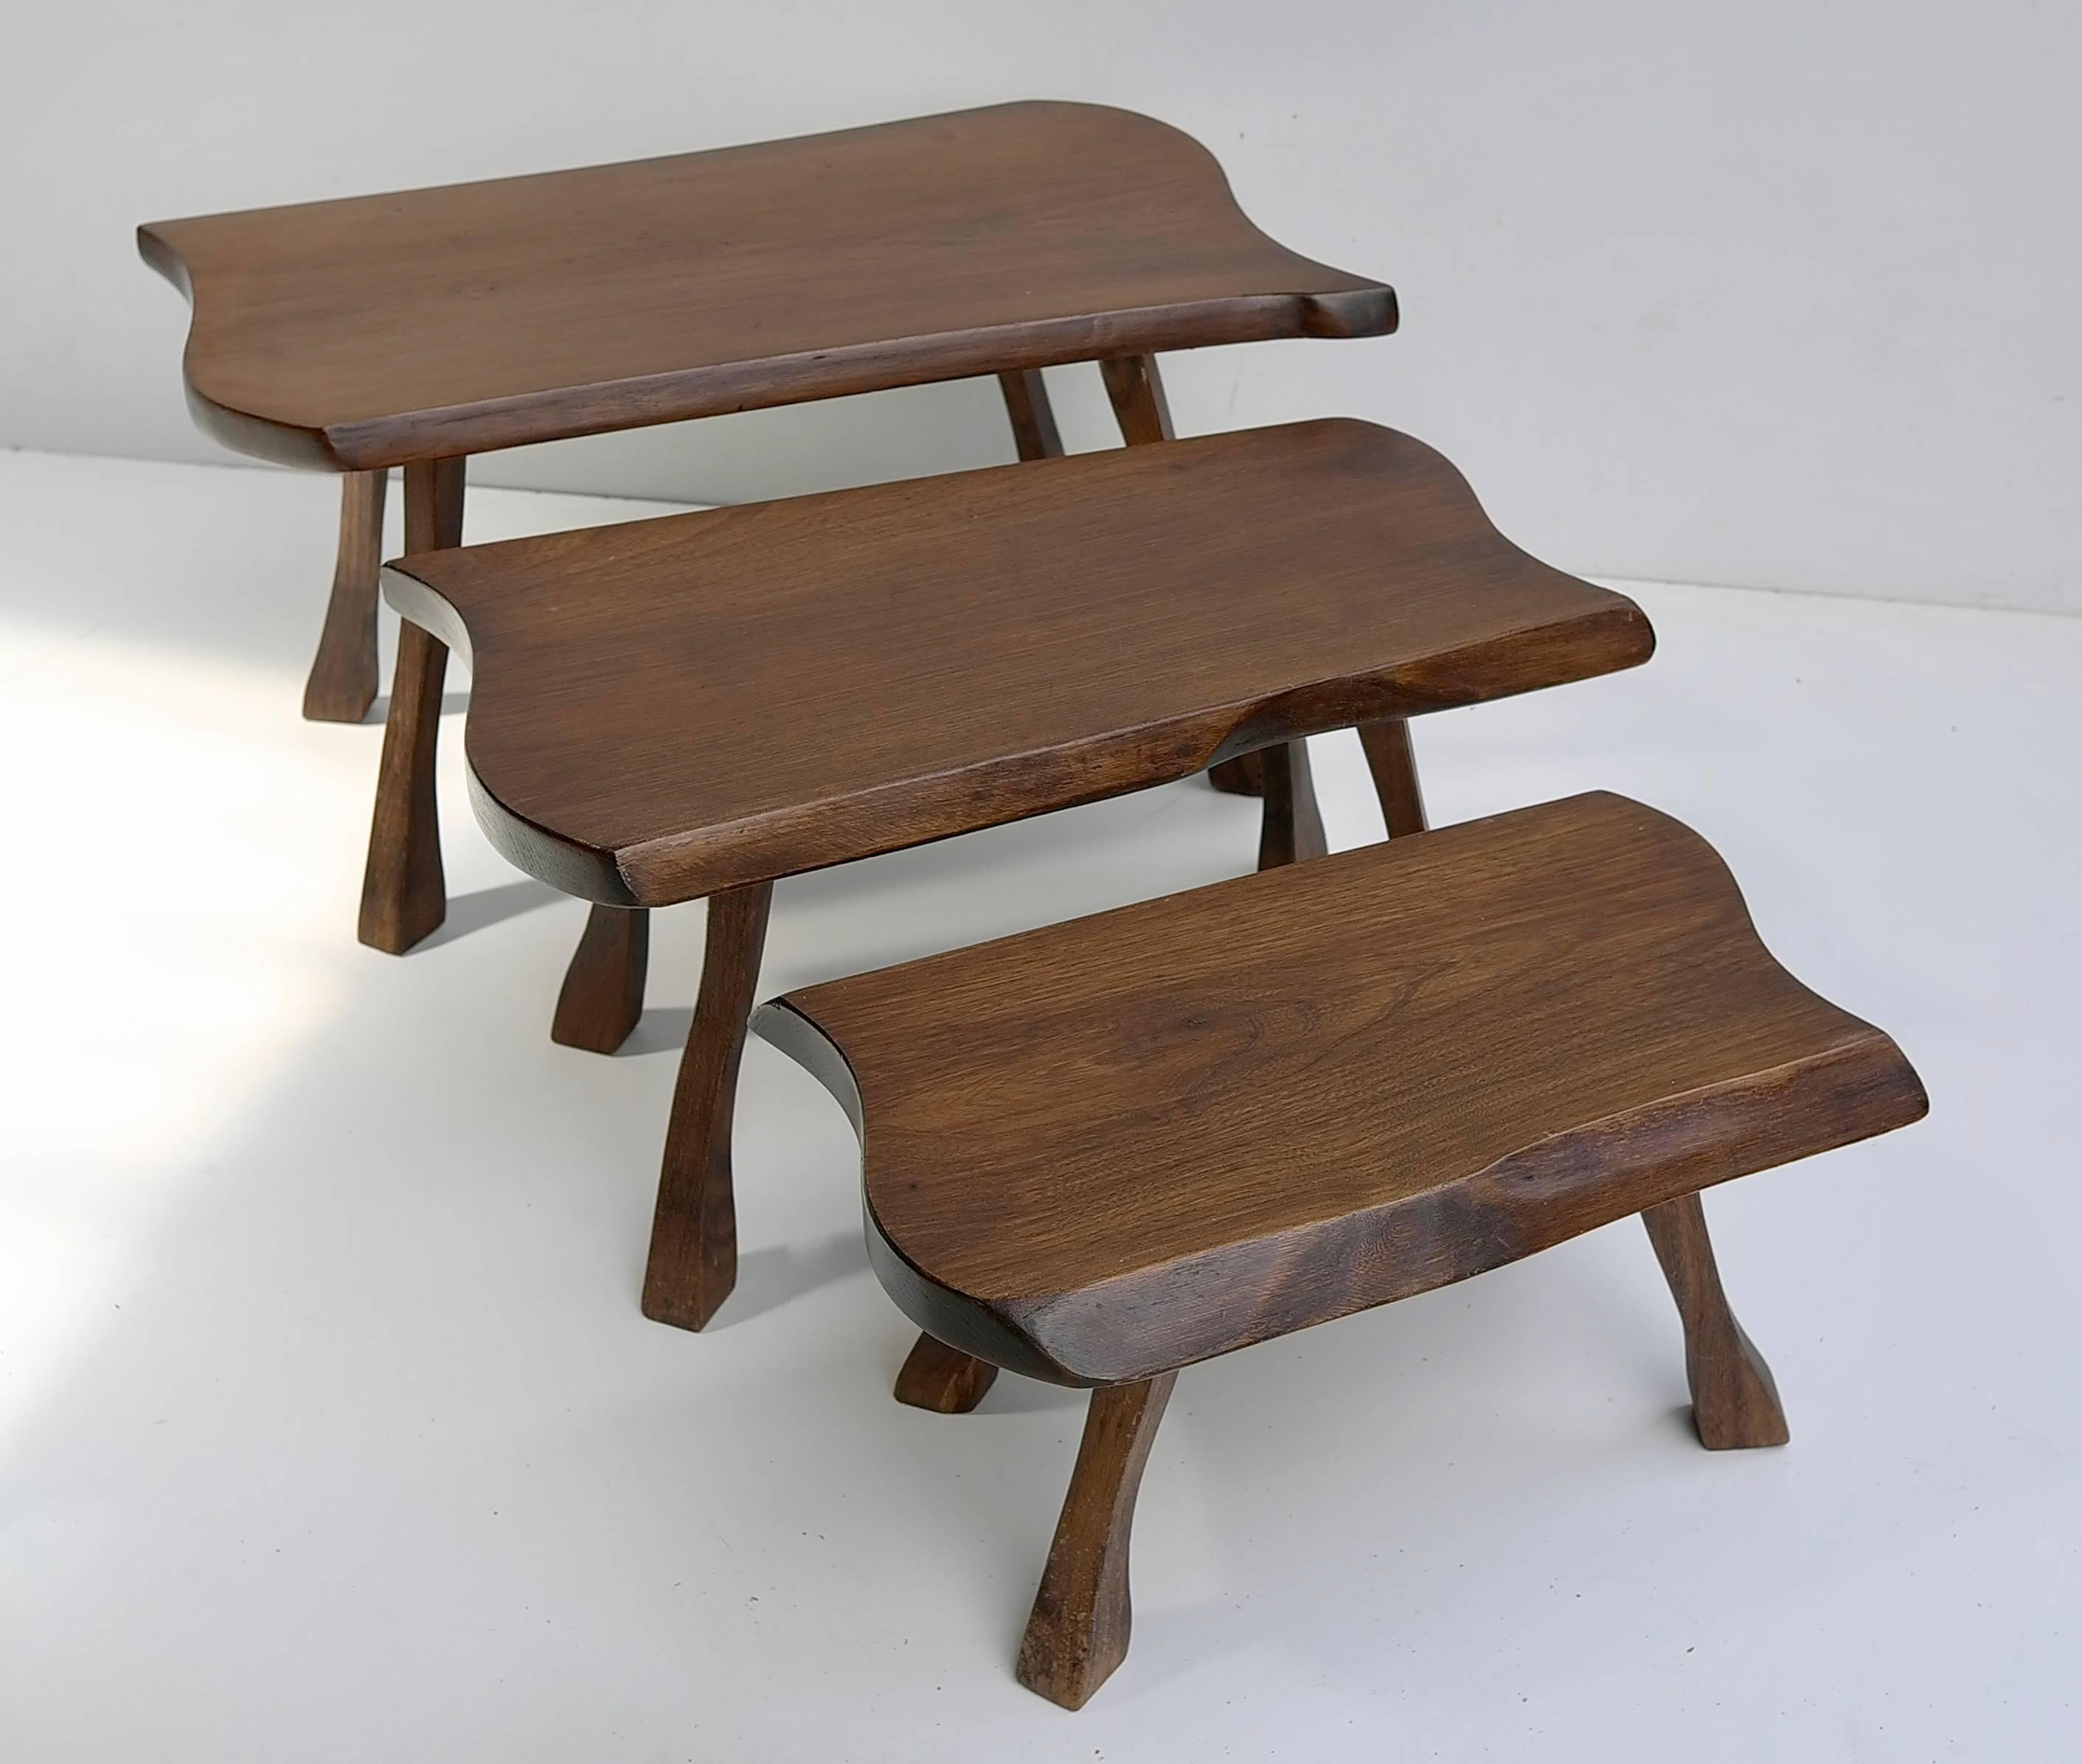 Bio-Beistelltische aus Holz

Maße: Größter Tisch: 60cm x 30cm, mittlerer Tisch: 50cm x 25cm, kleinster 40cm x 20cm.